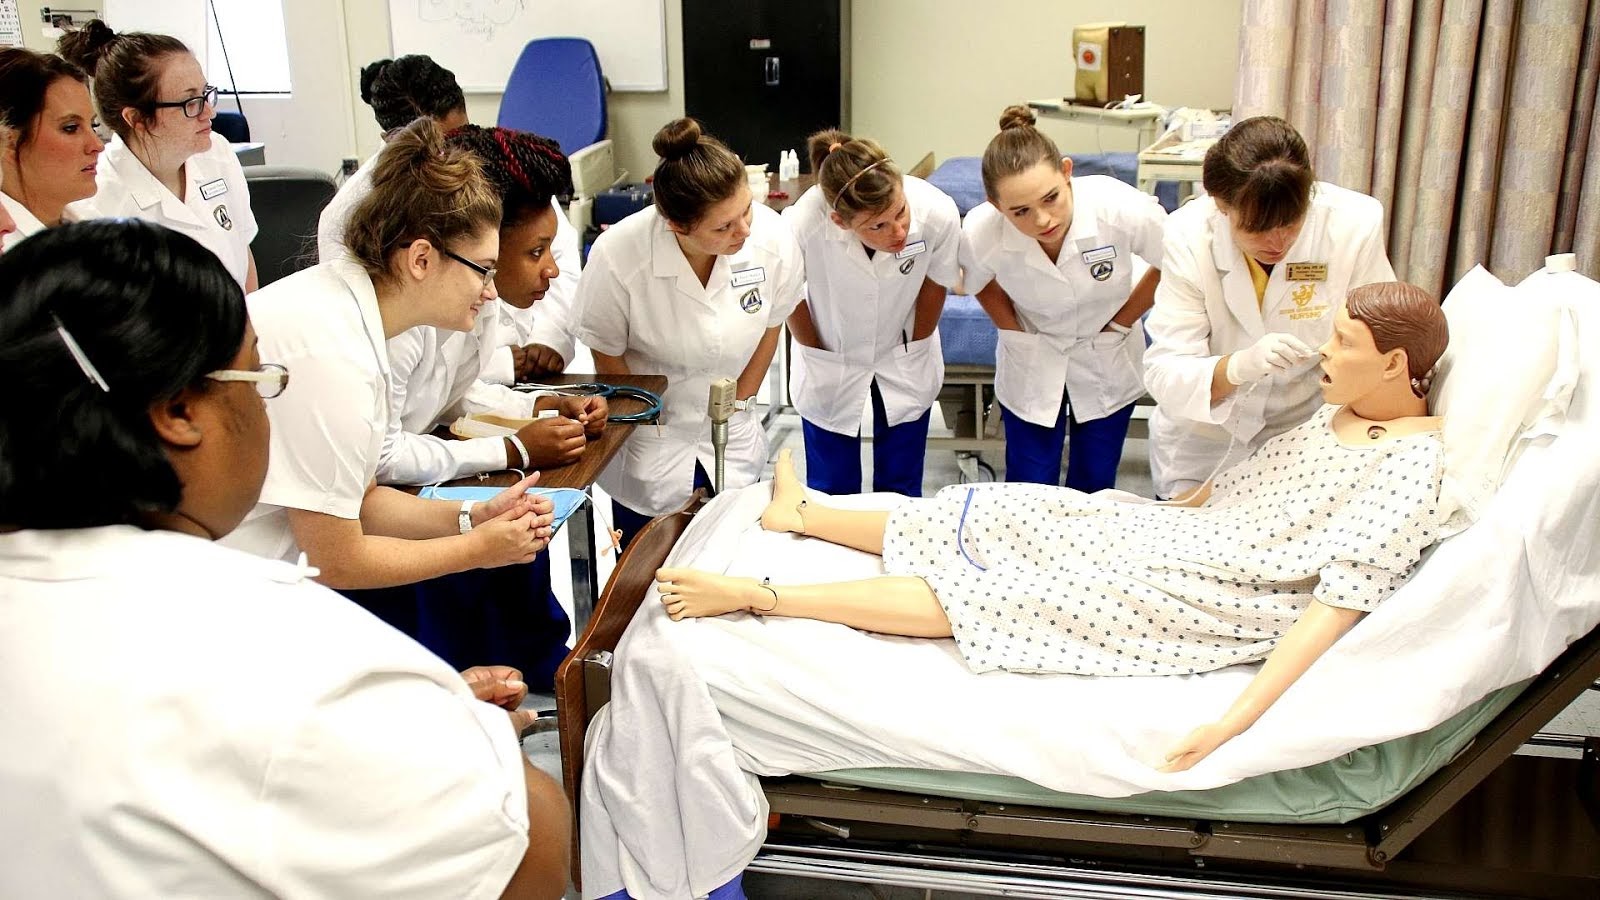 Southern University Nursing Program - University Choices